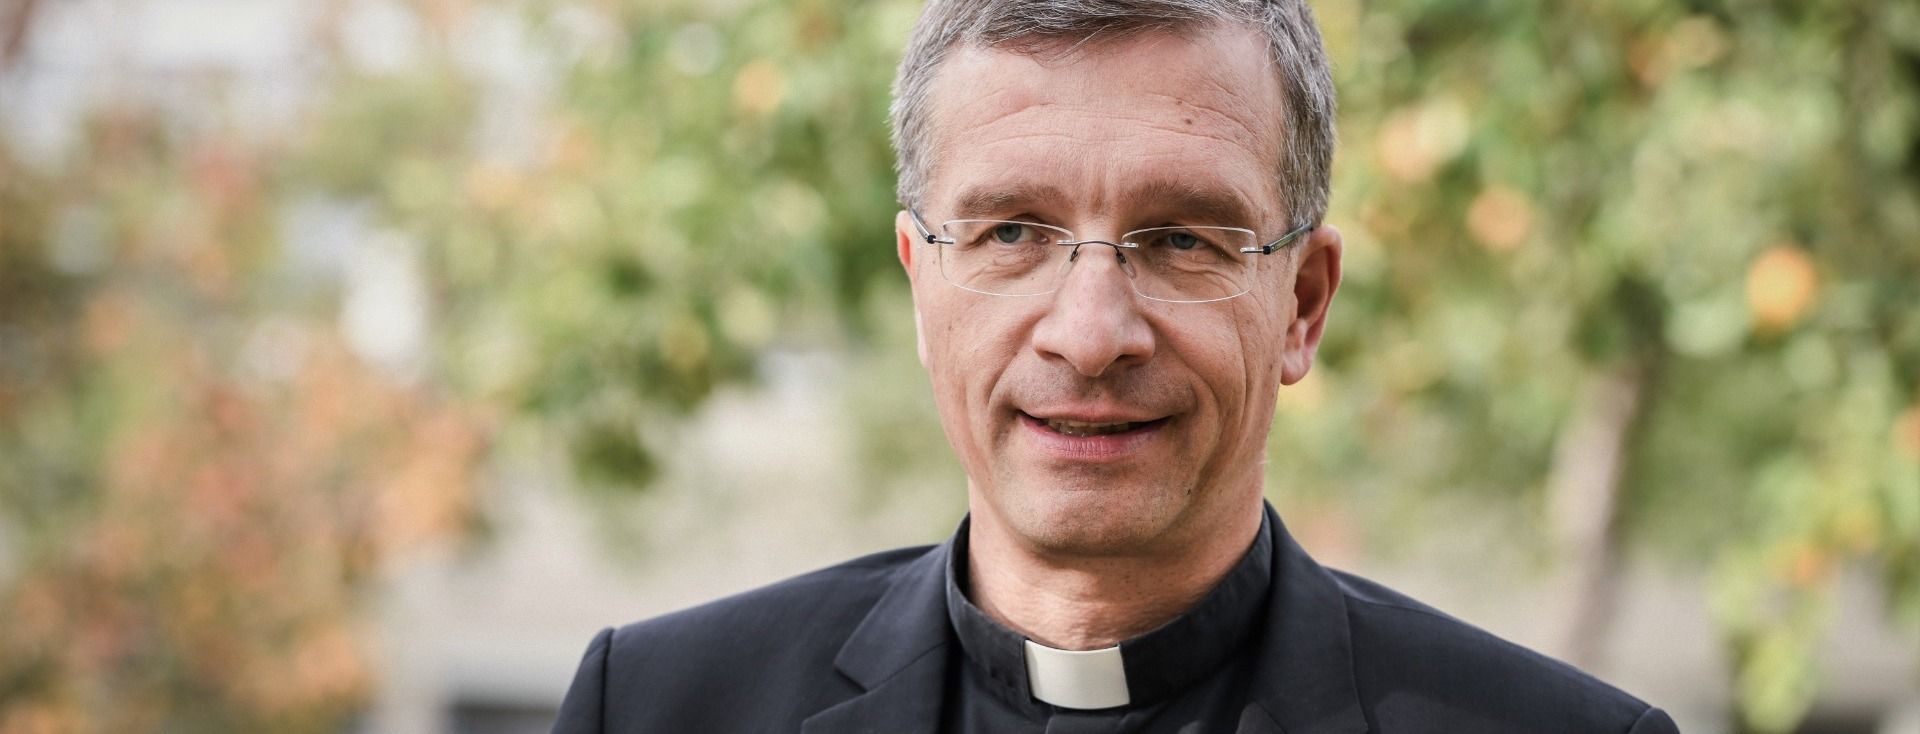 Bischof Dr. Michael Gerber zu Papst-Enzyklika und "Synodalem Weg"